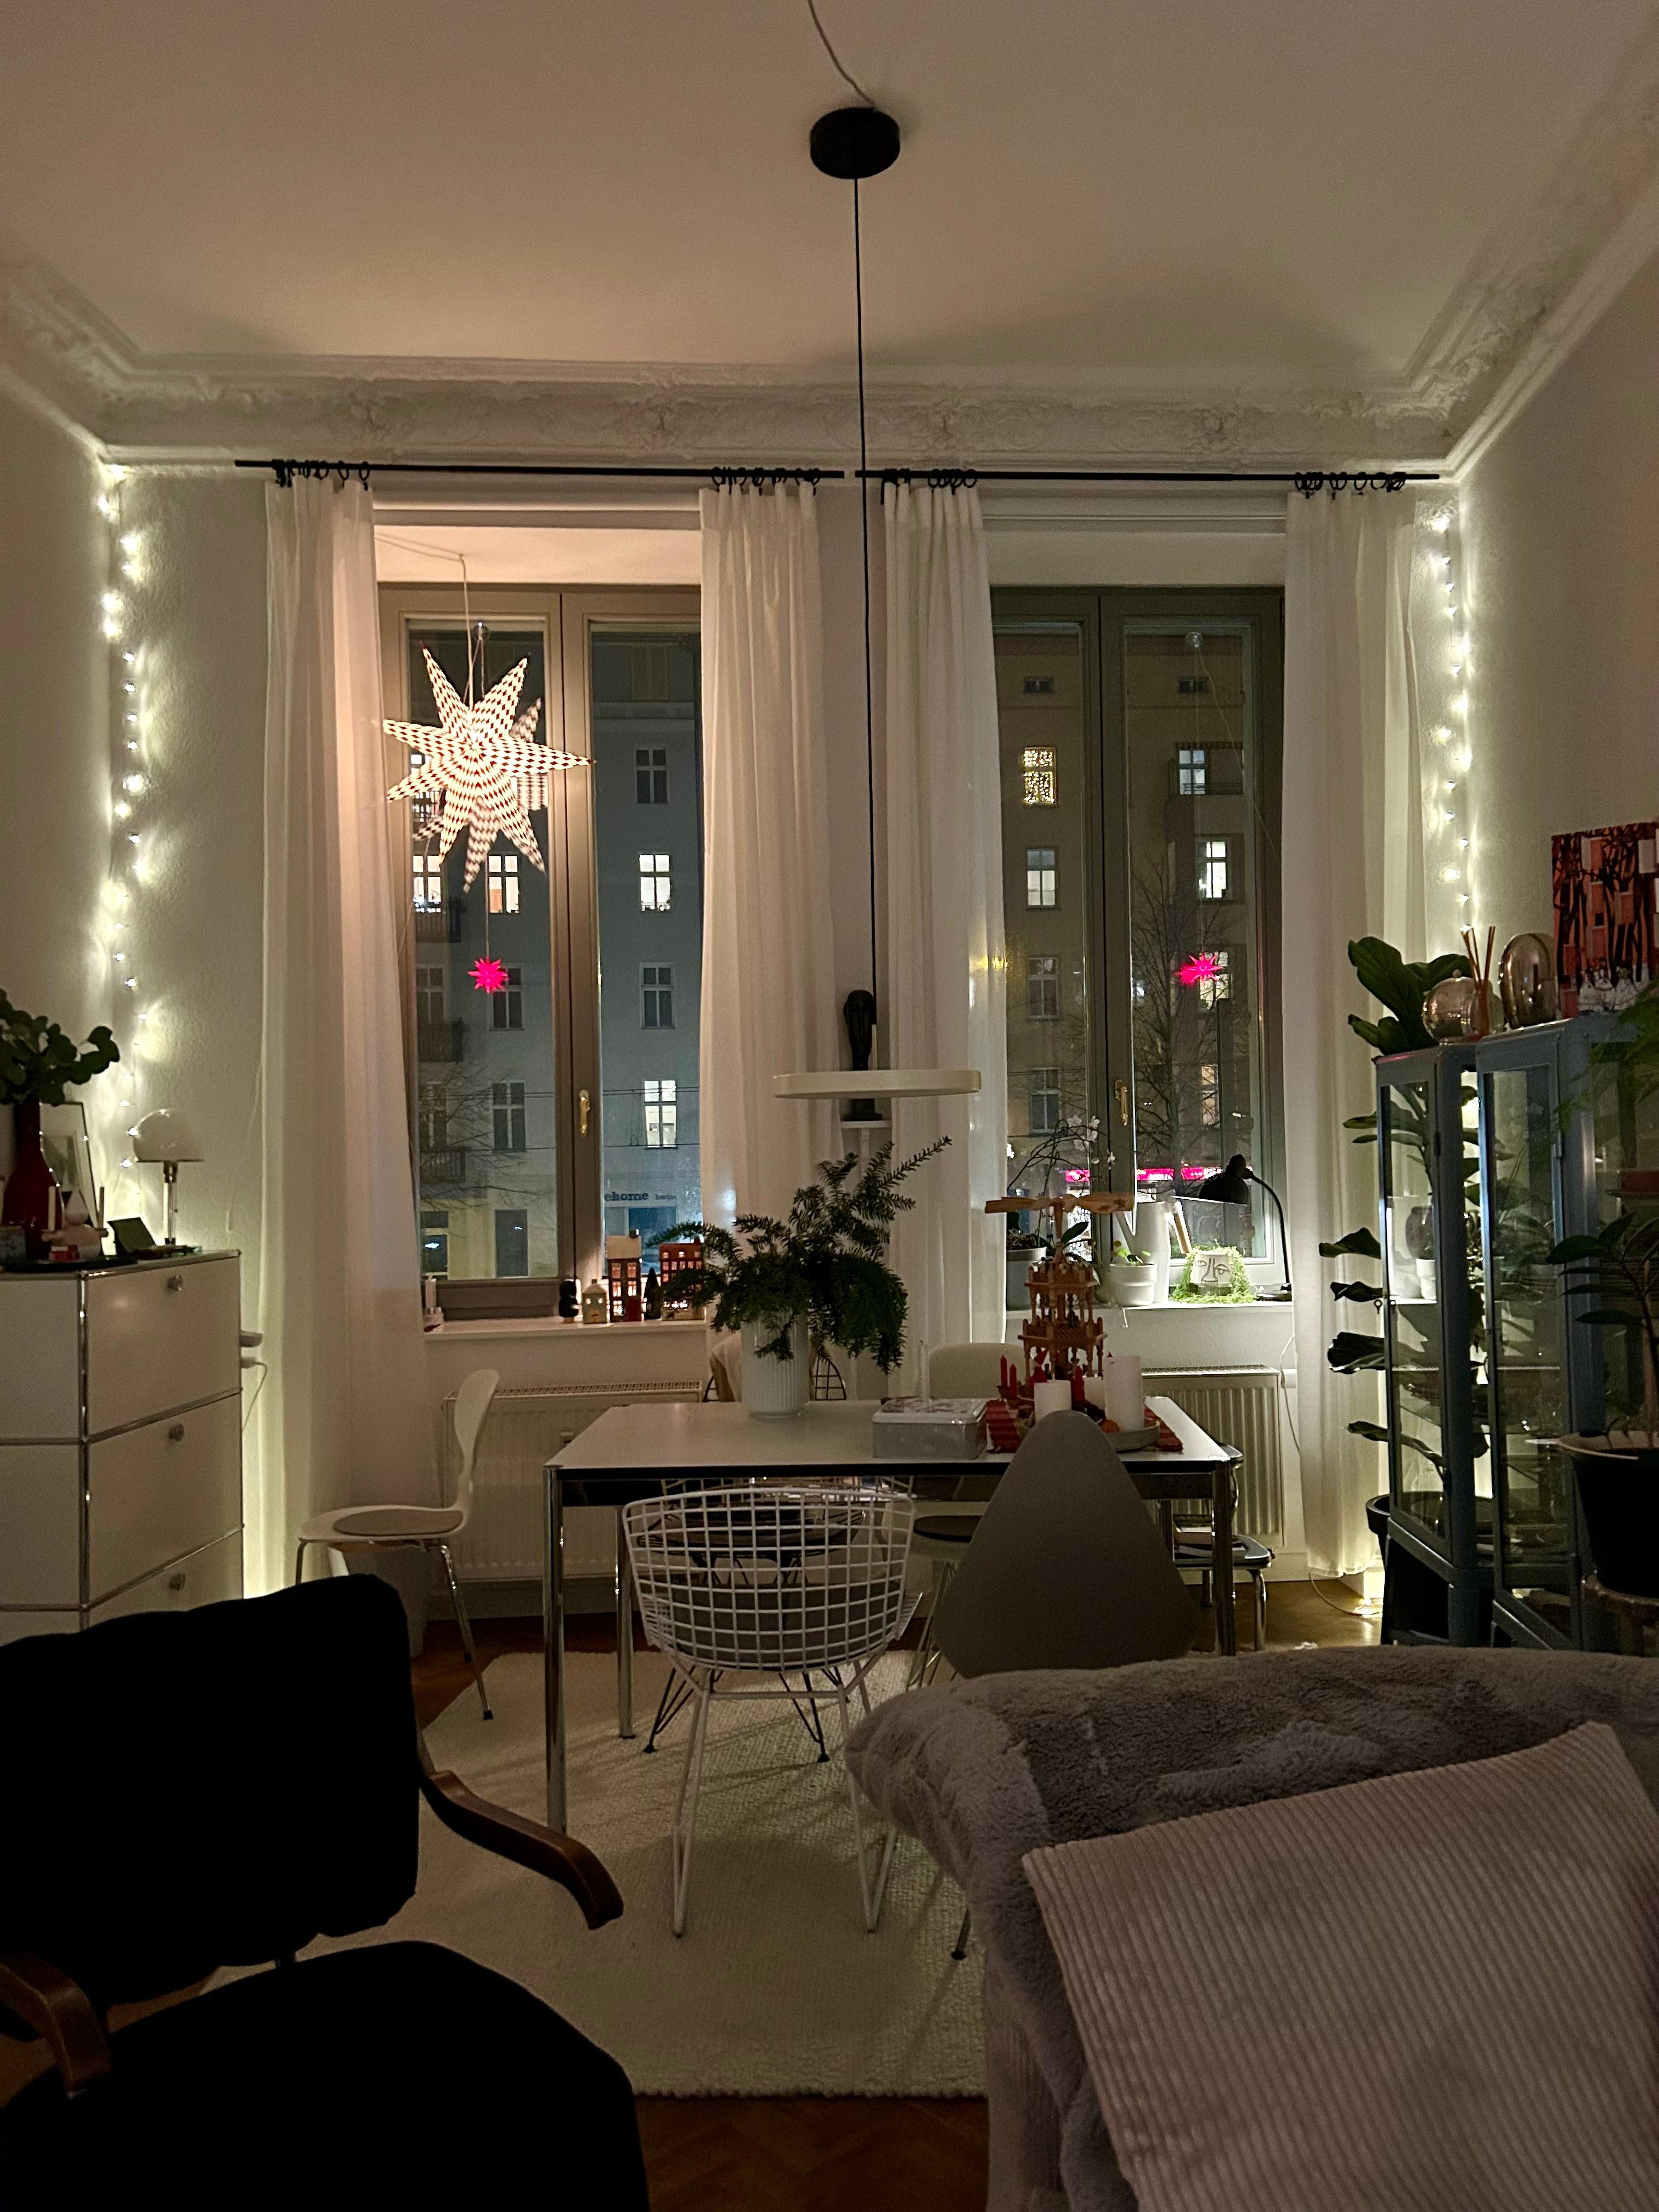 #Weihnachten2023 #Lichter #Sterne #Wohnzimmer #Altbauwohnung 
Weihnachten klingt aus. Ruhe kehrt ein. 